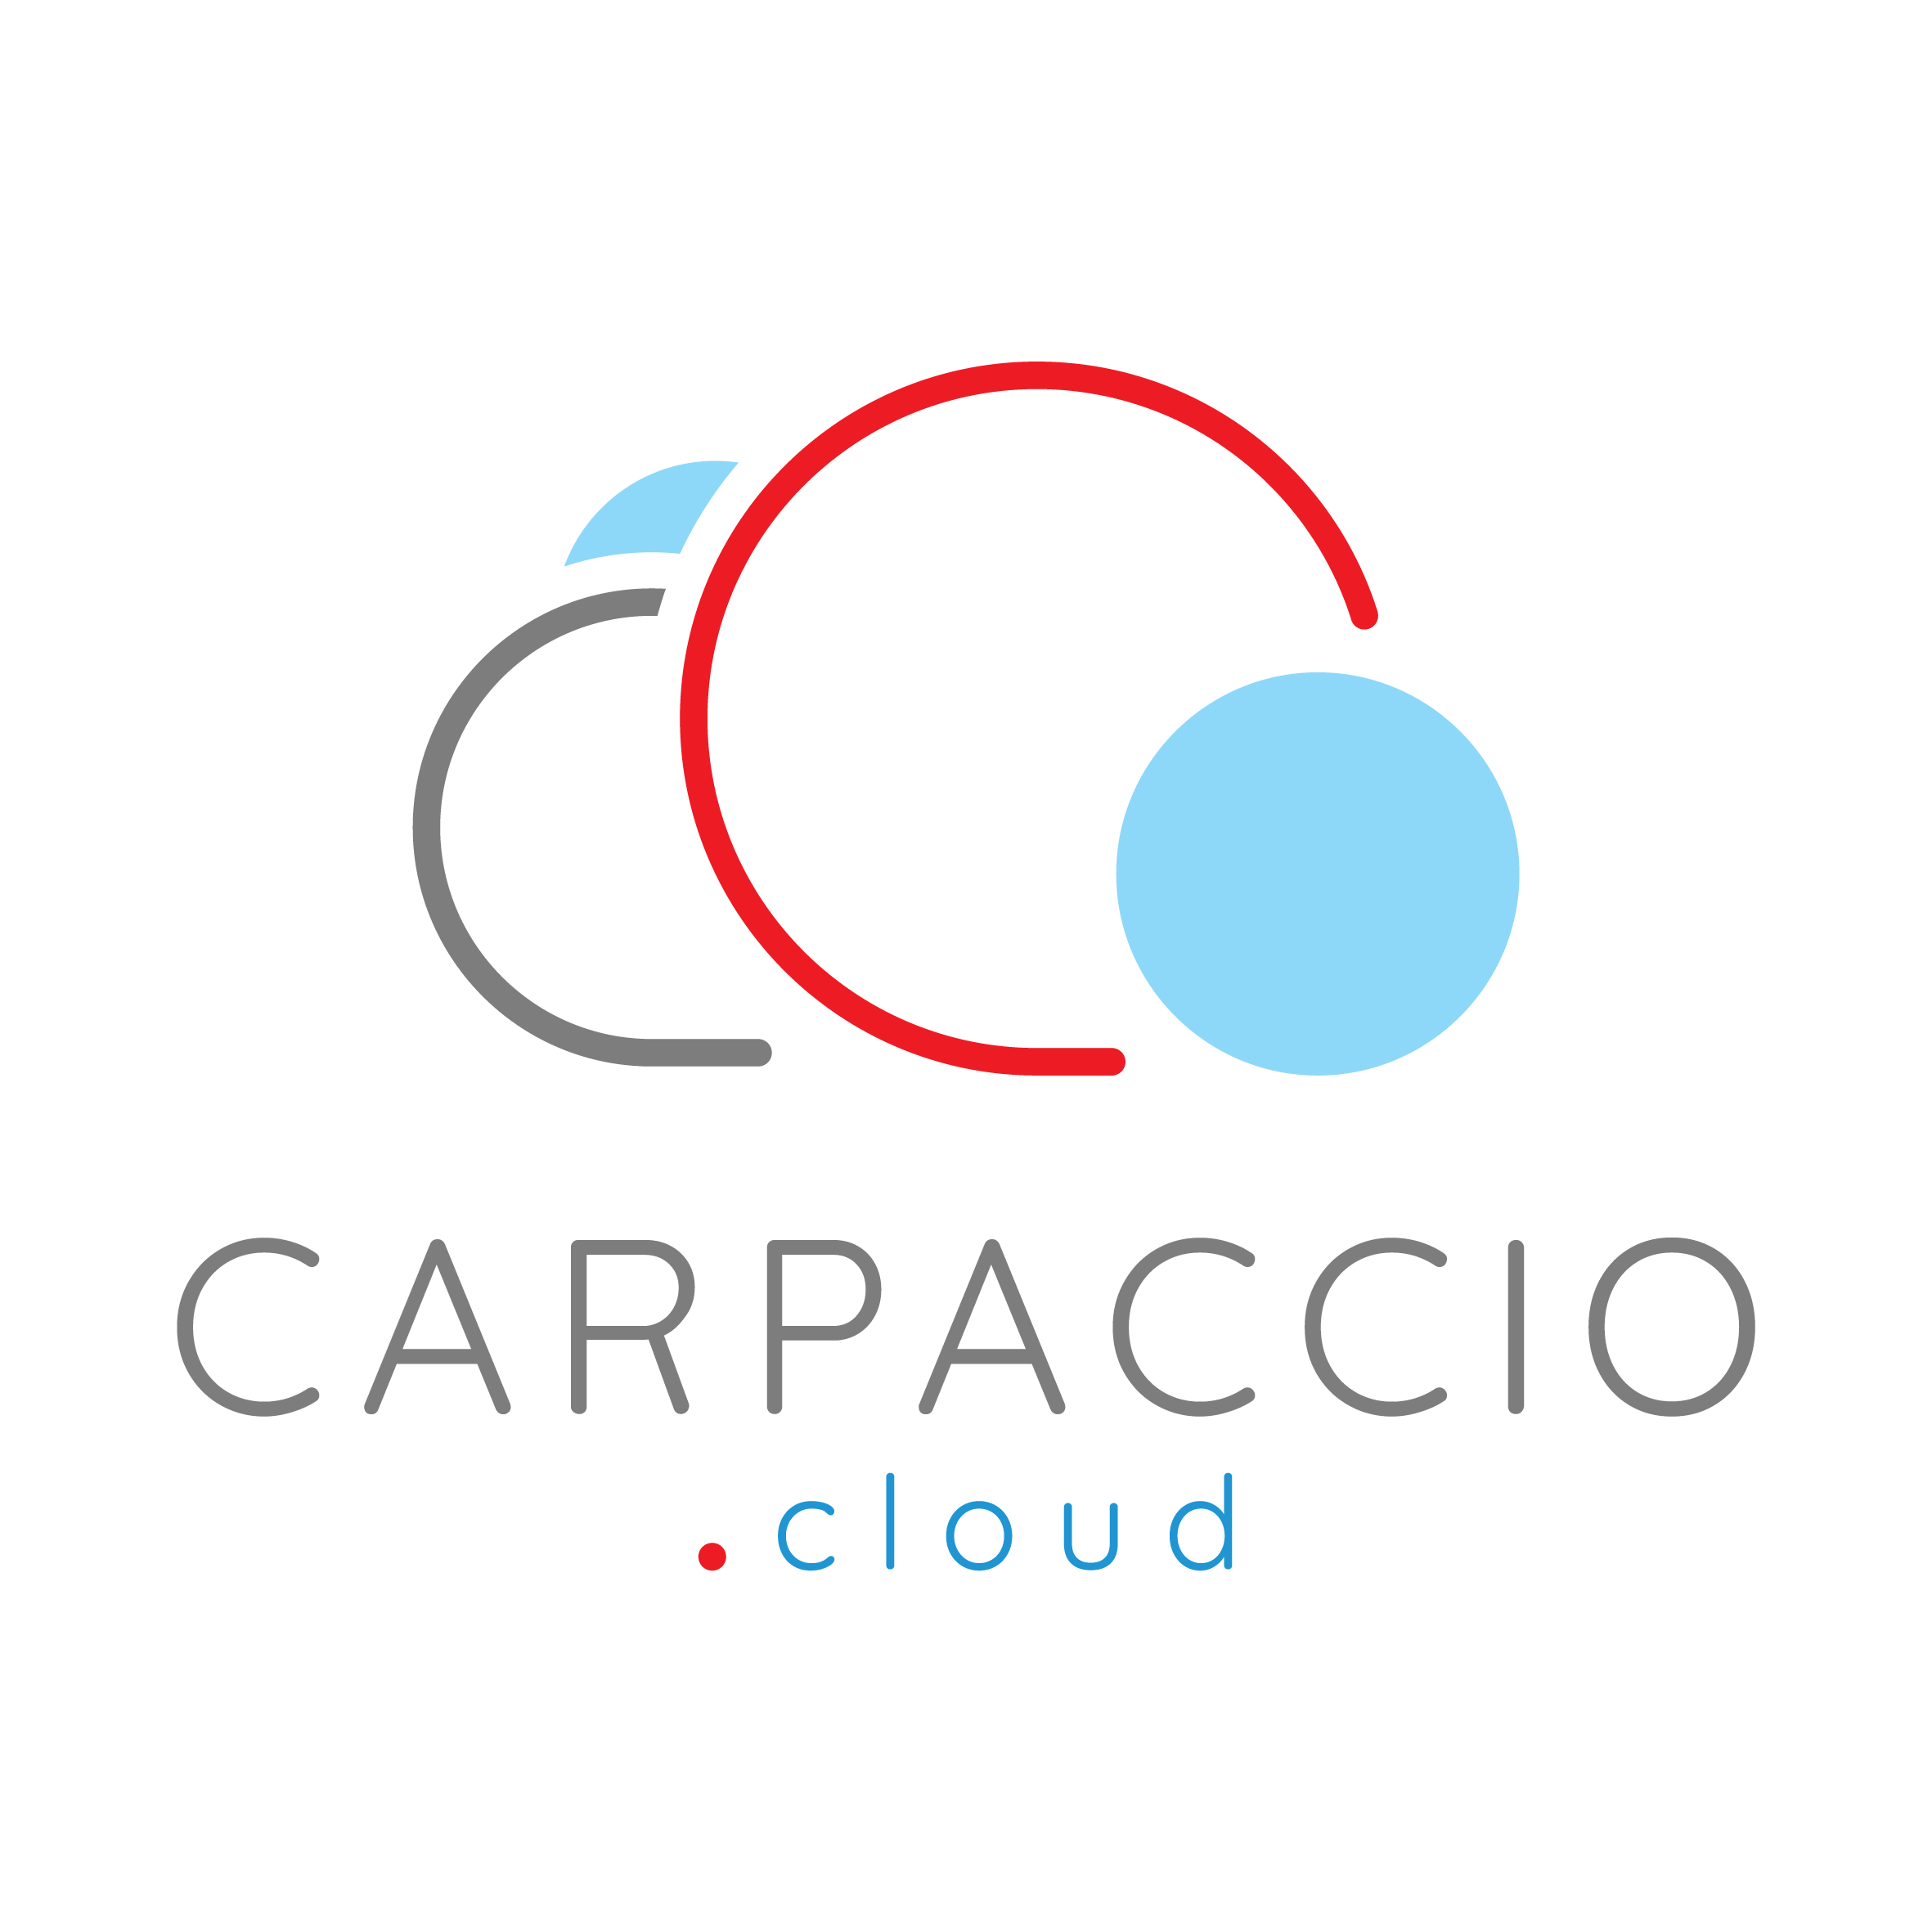 CARPACCIO.cloud